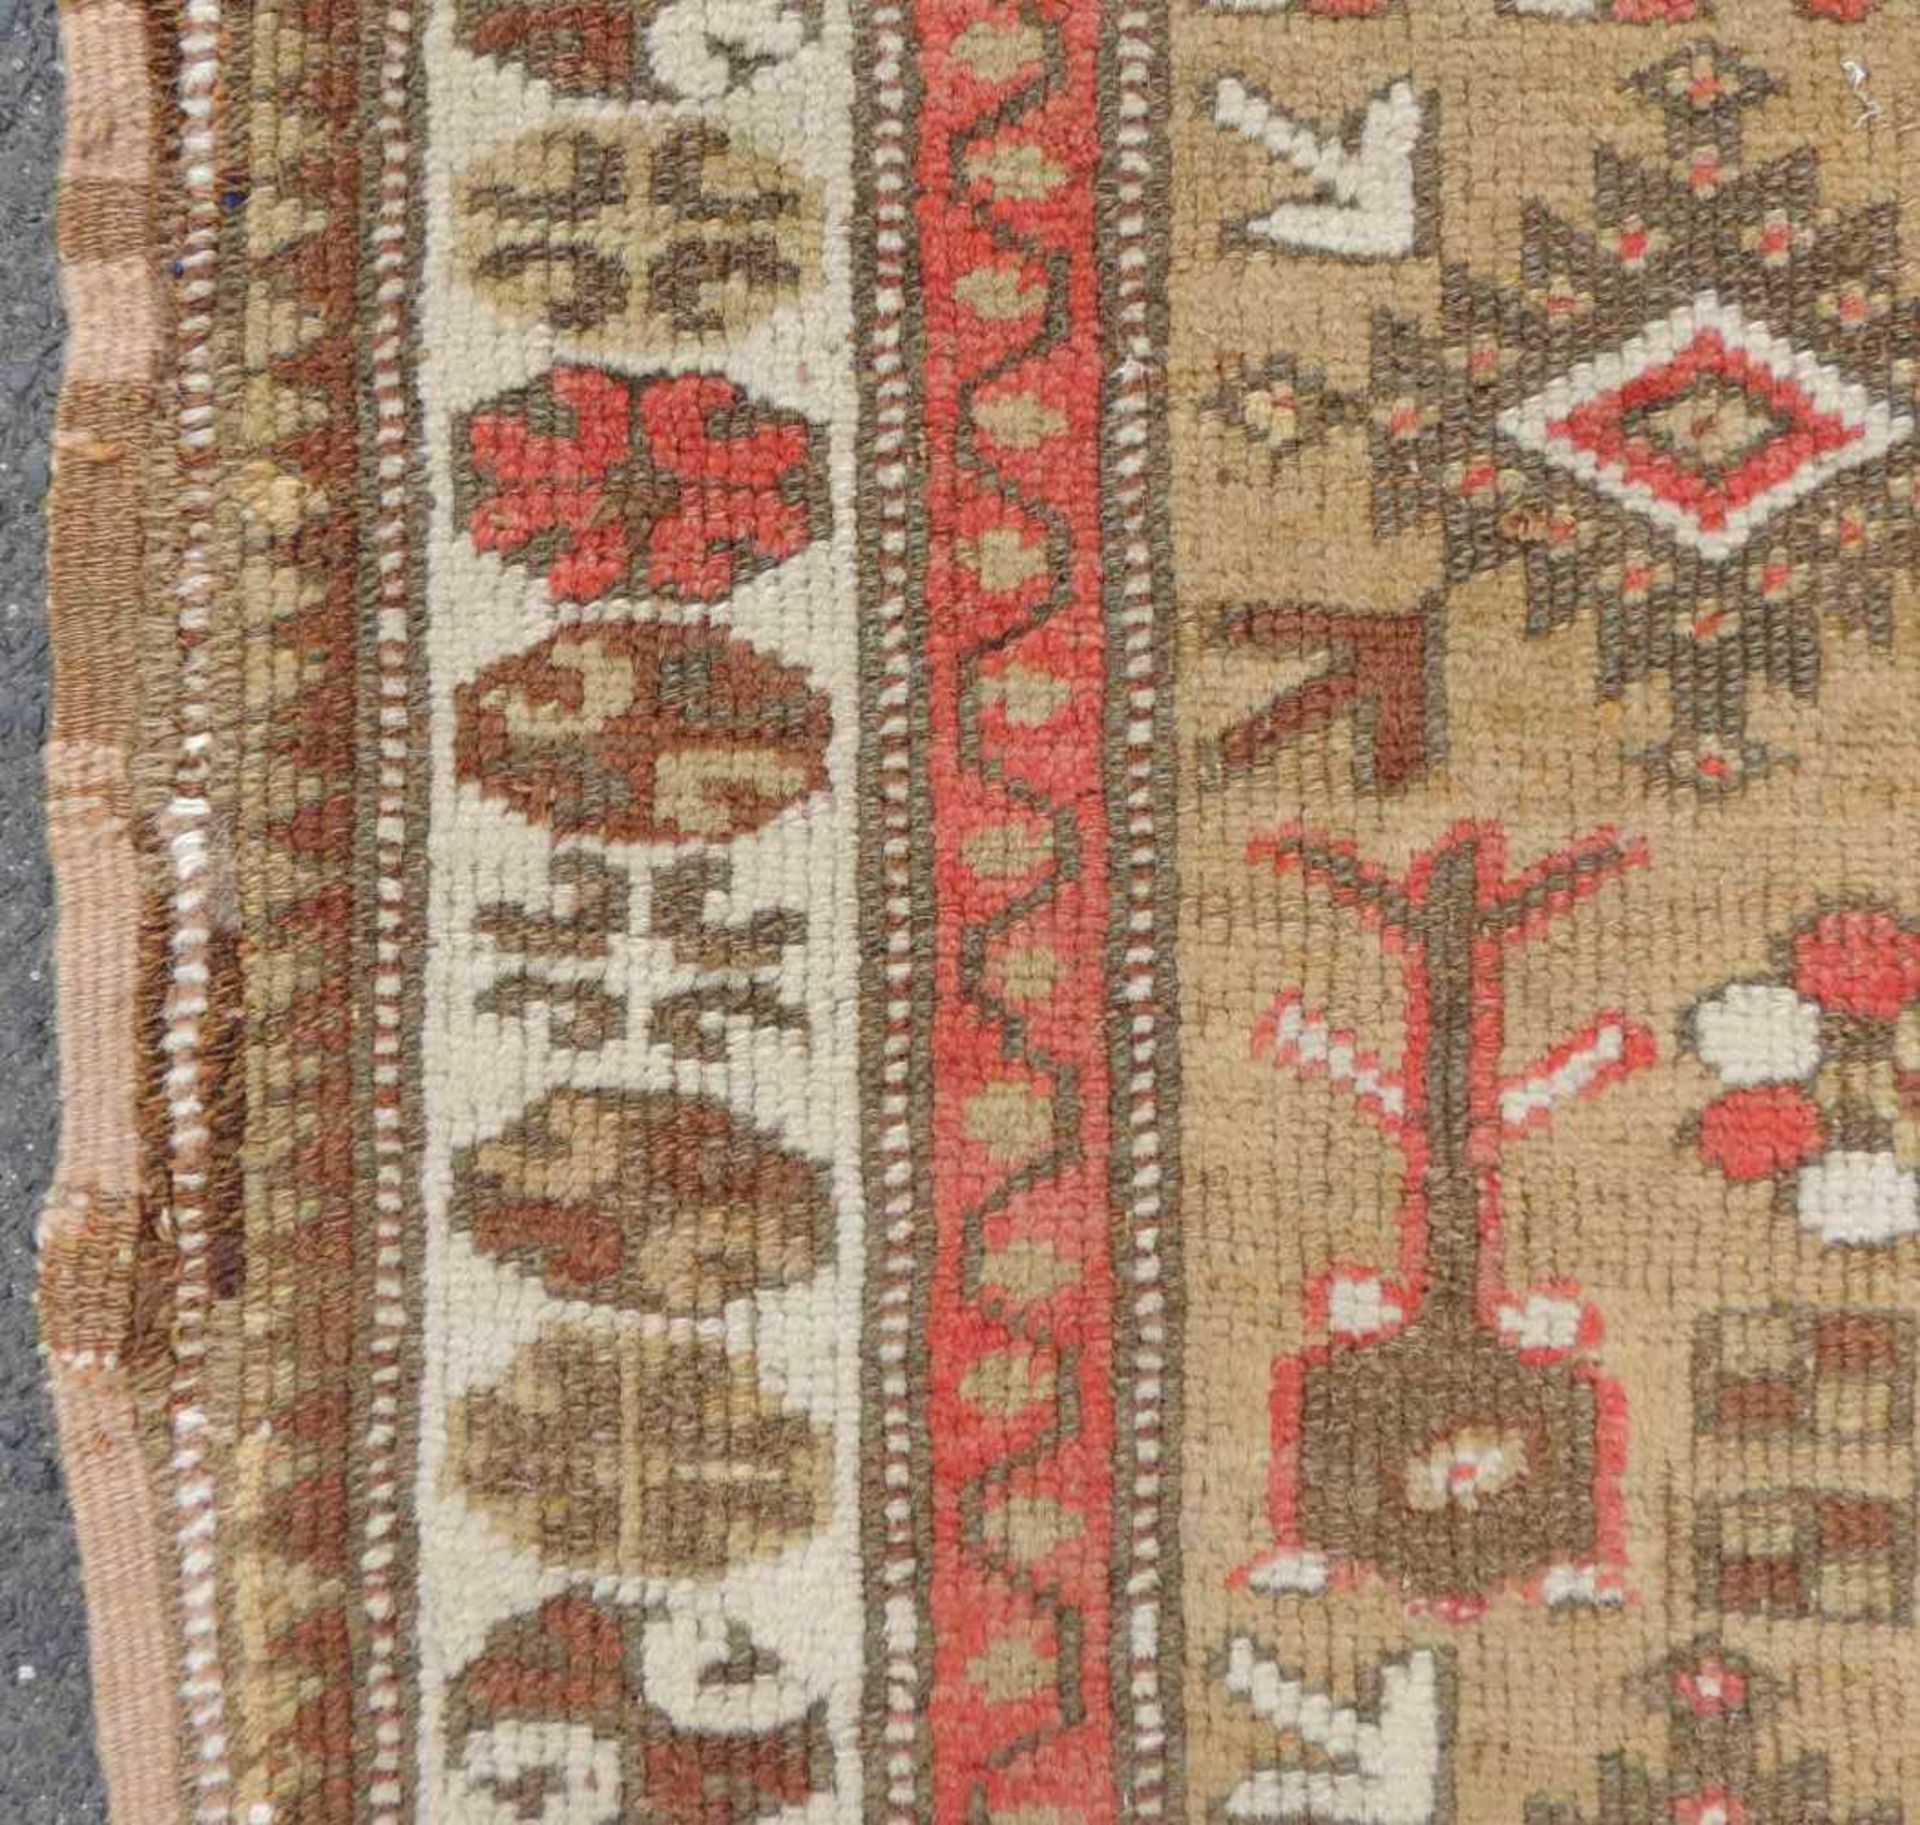 Melas Gebetsteppich. Türkei. West Anatolien. Antik um 1900. 201 cm x 128 cm. Handgeknüpft. Wolle auf - Bild 8 aus 8